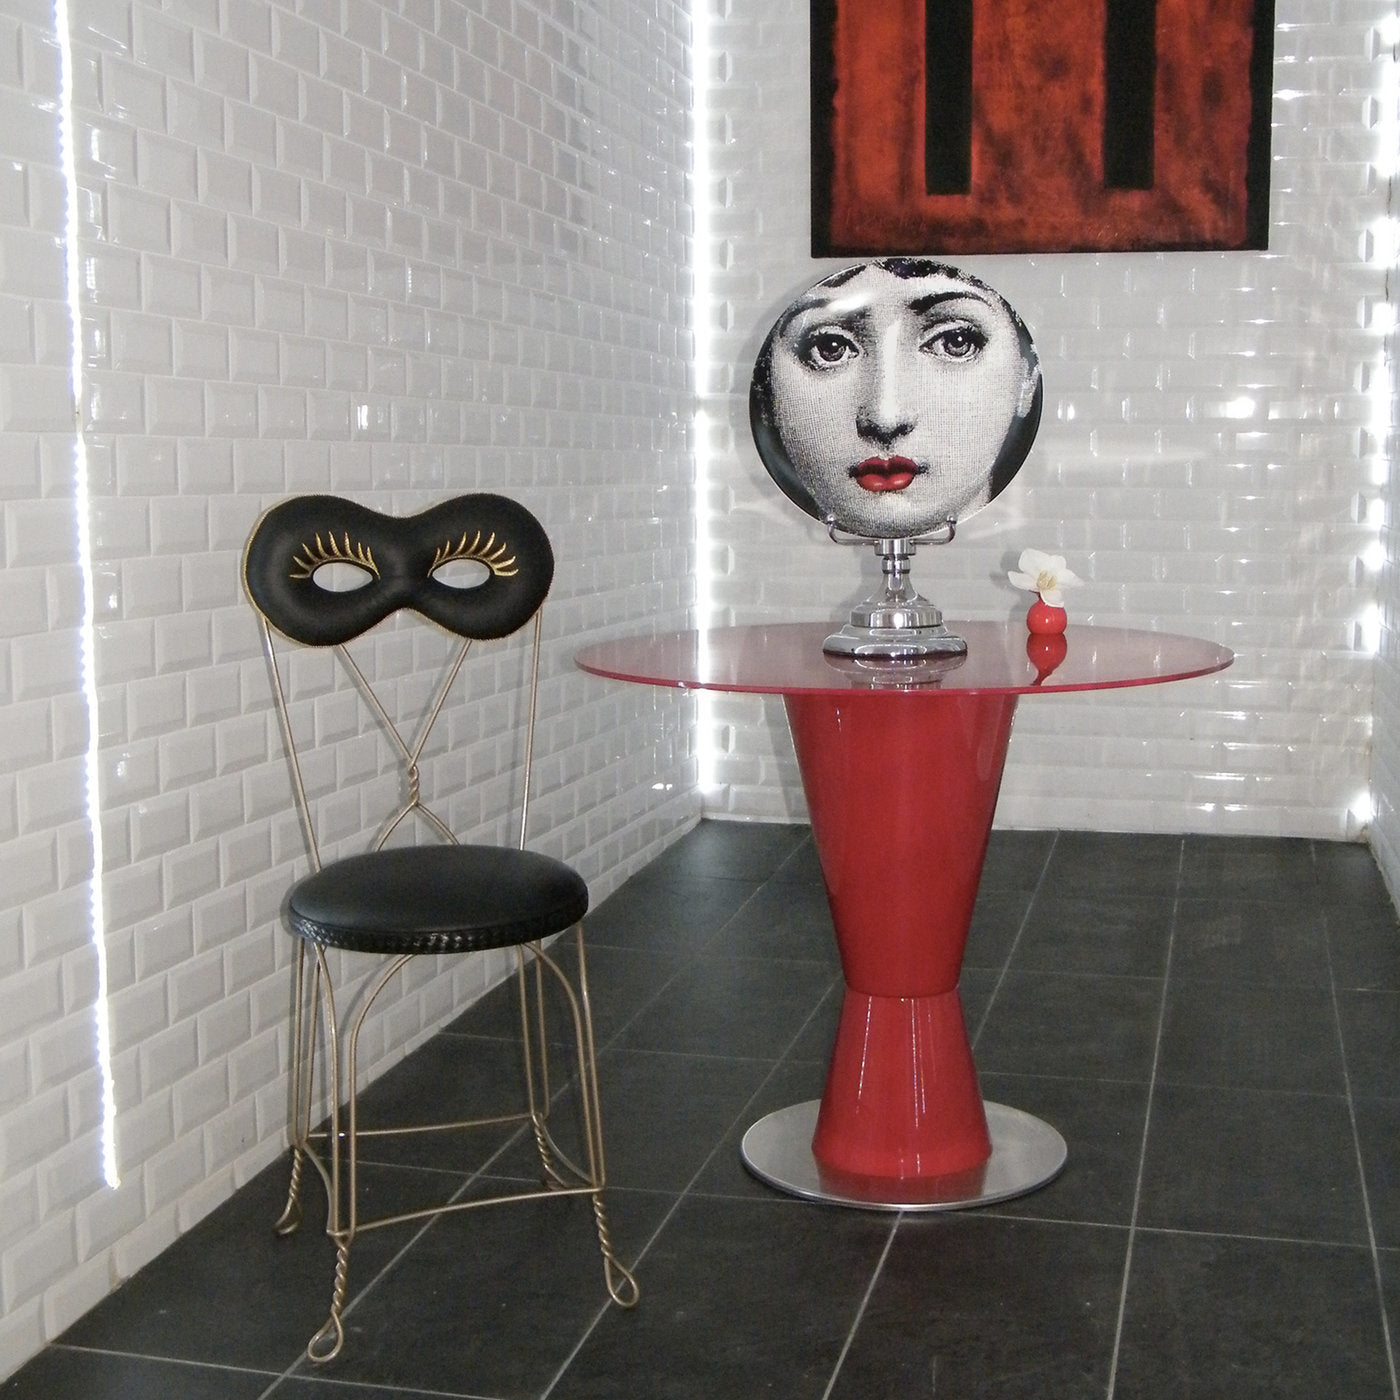 Maschera Chair by Moschino - Alternative view 2